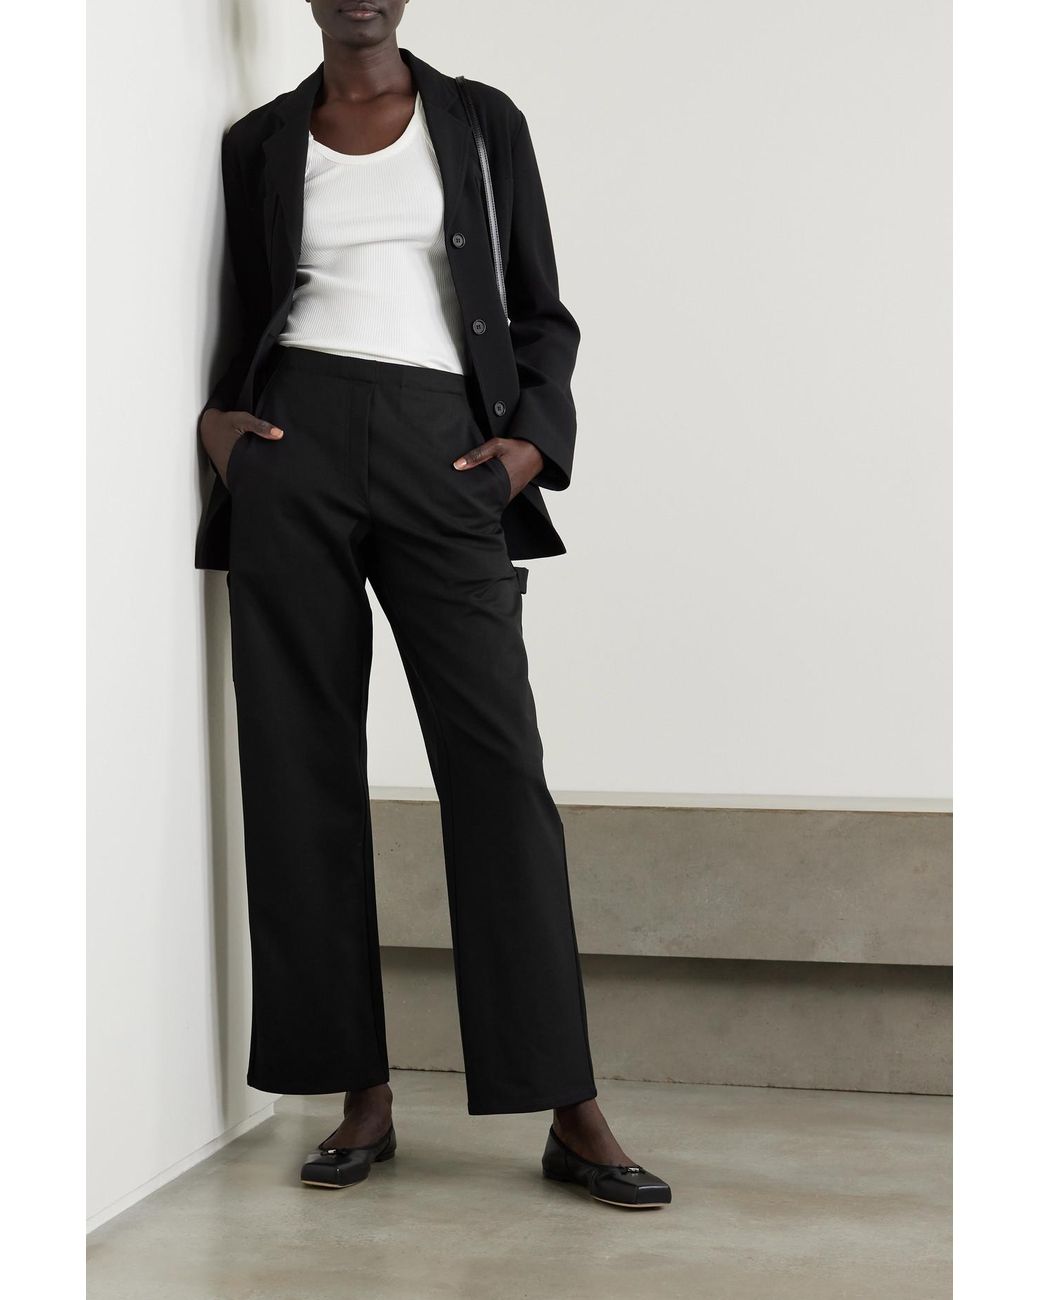 Black wool blend Wide Leg Pant Suit